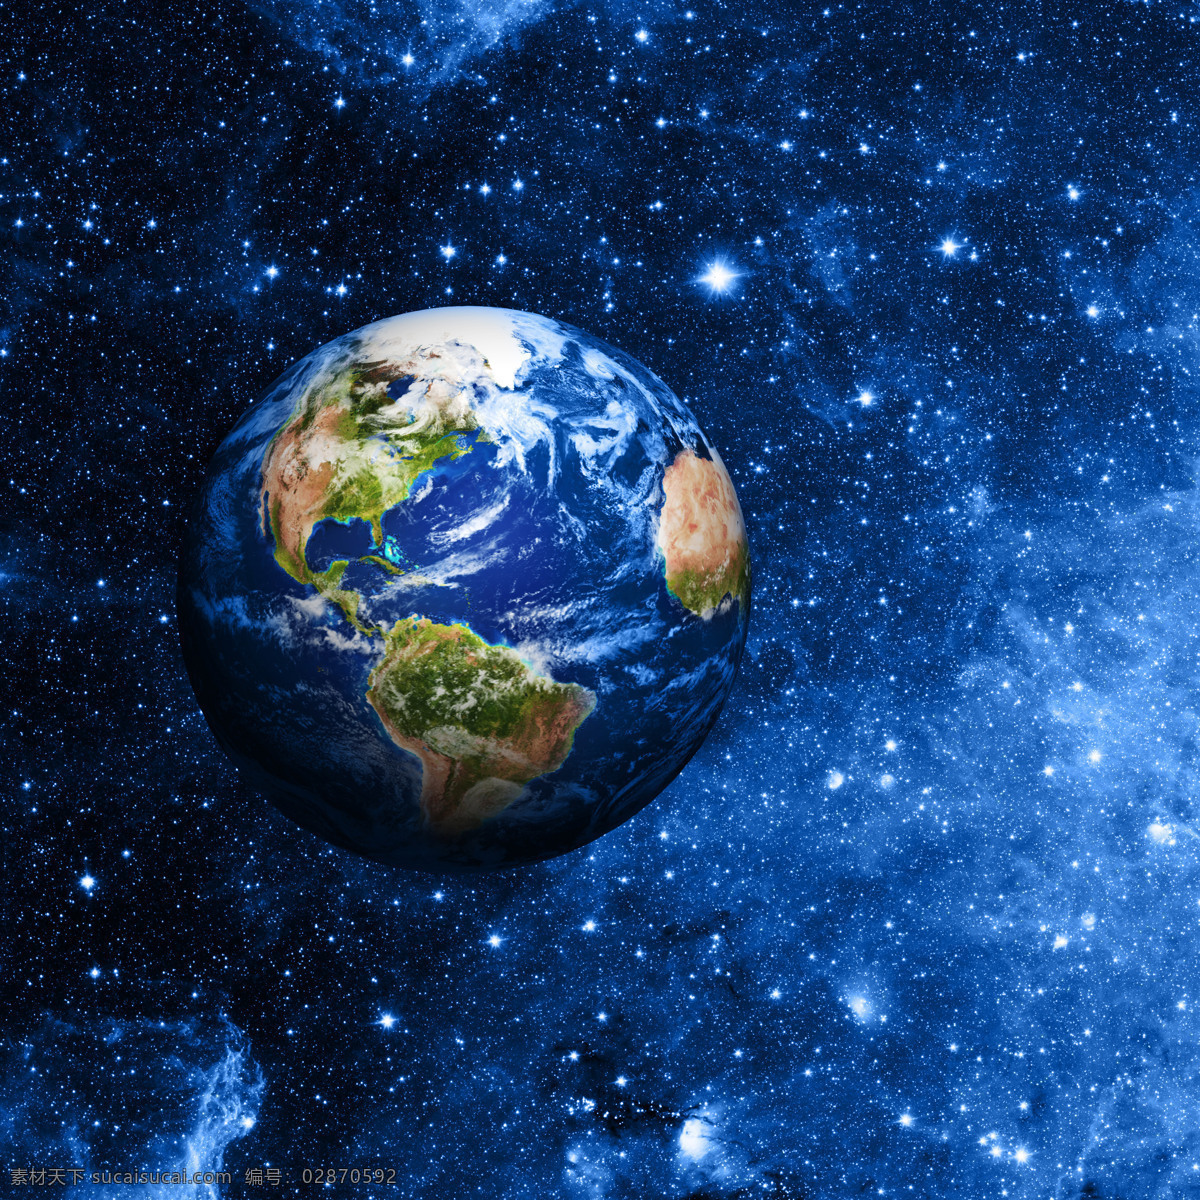 我们 地球 母亲 家园 地球母亲 宇宙 星球 星空 行星 地球表面 地球图片 环境家居